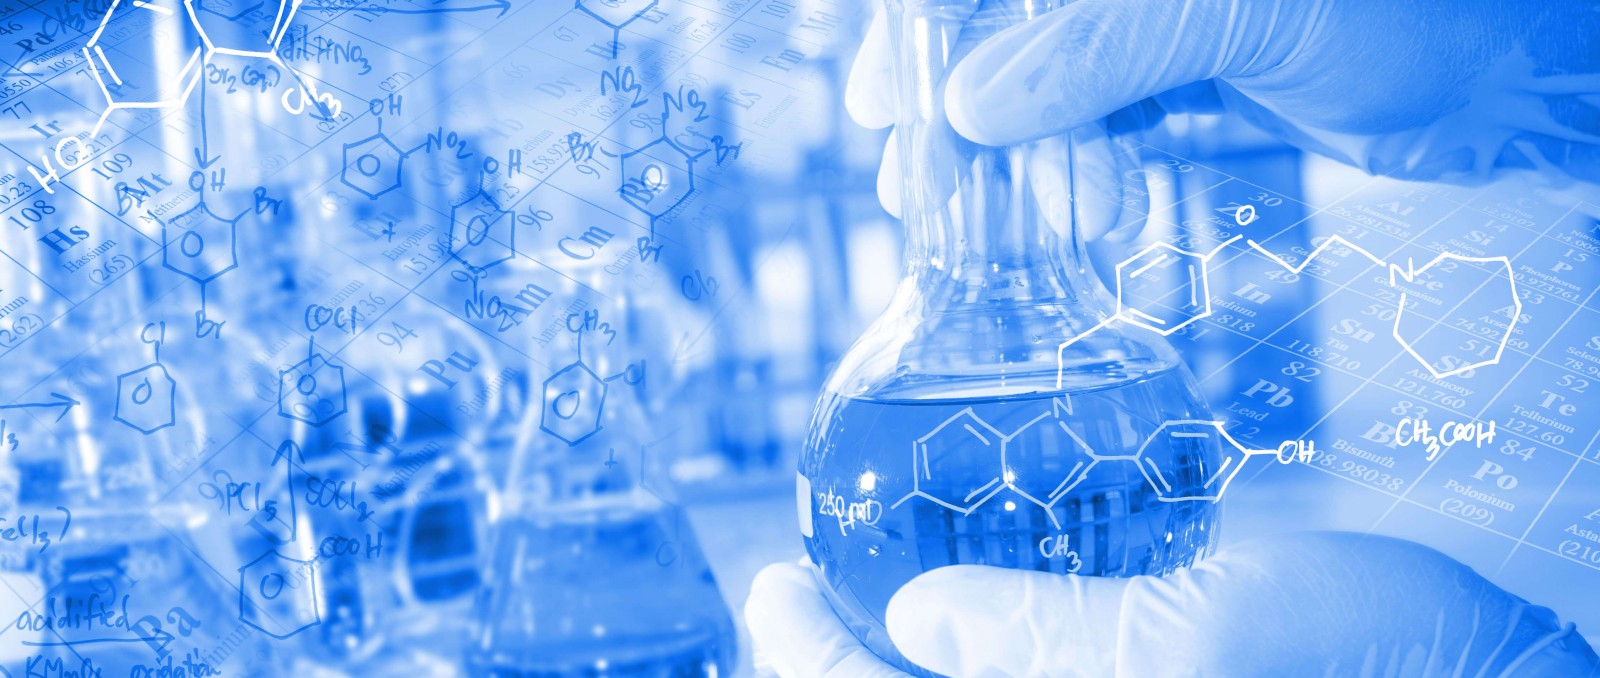 AsstrA wychodzi naprzeciw oczekiwaniom klientów branży chemicznej